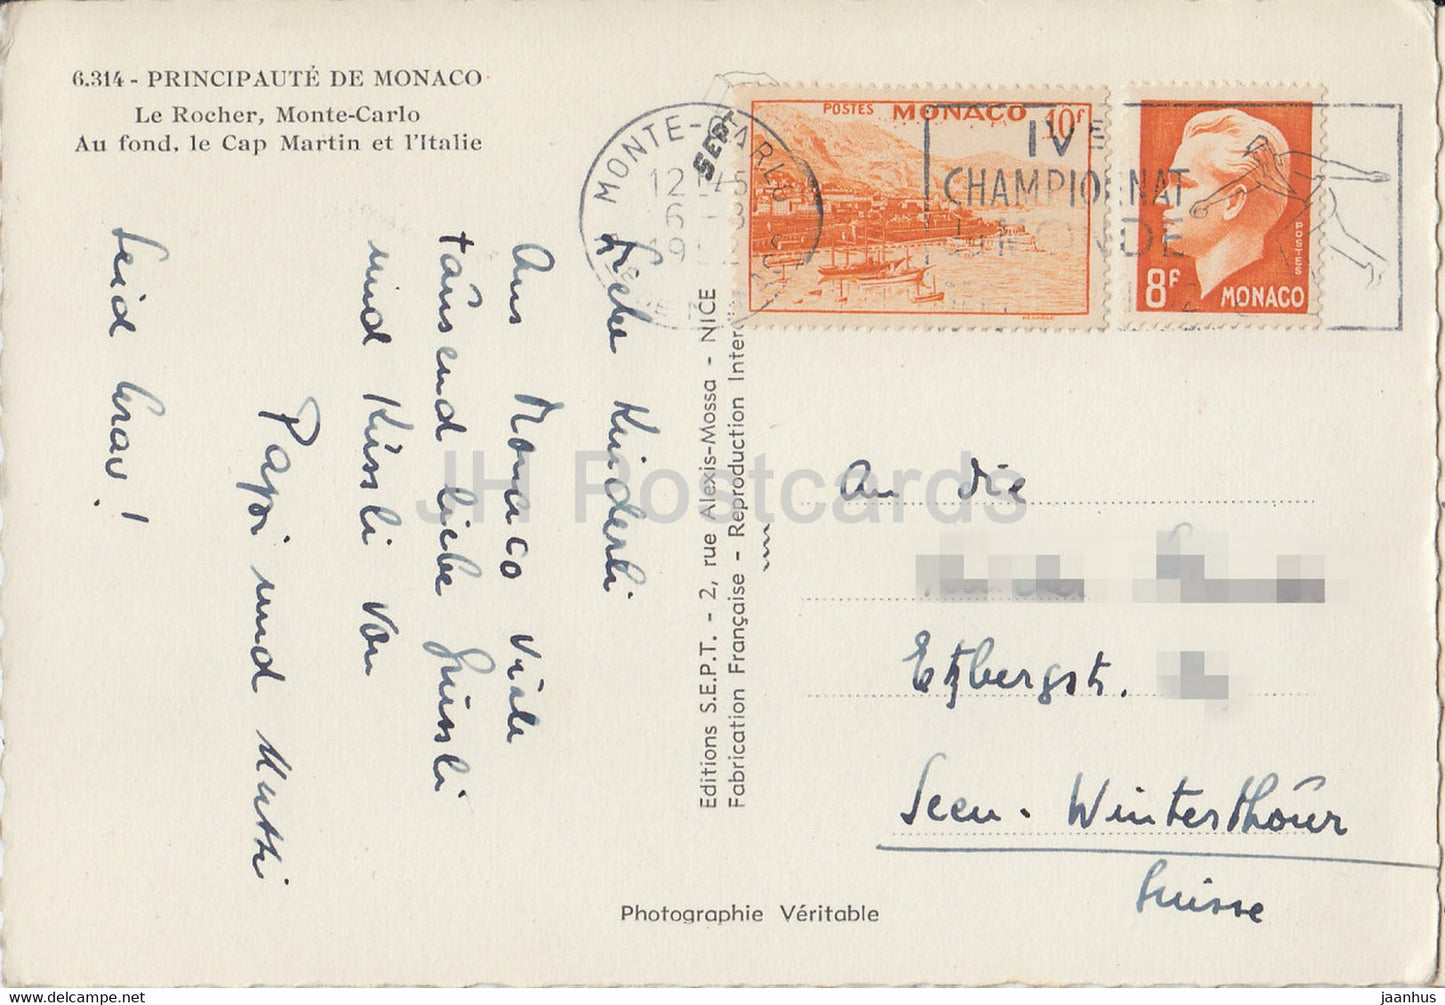 Le Rocher - Monte Carlo - Au Fond Le Cap Martin et l'Italie - alte Postkarte - 1952 - Monaco - gebraucht